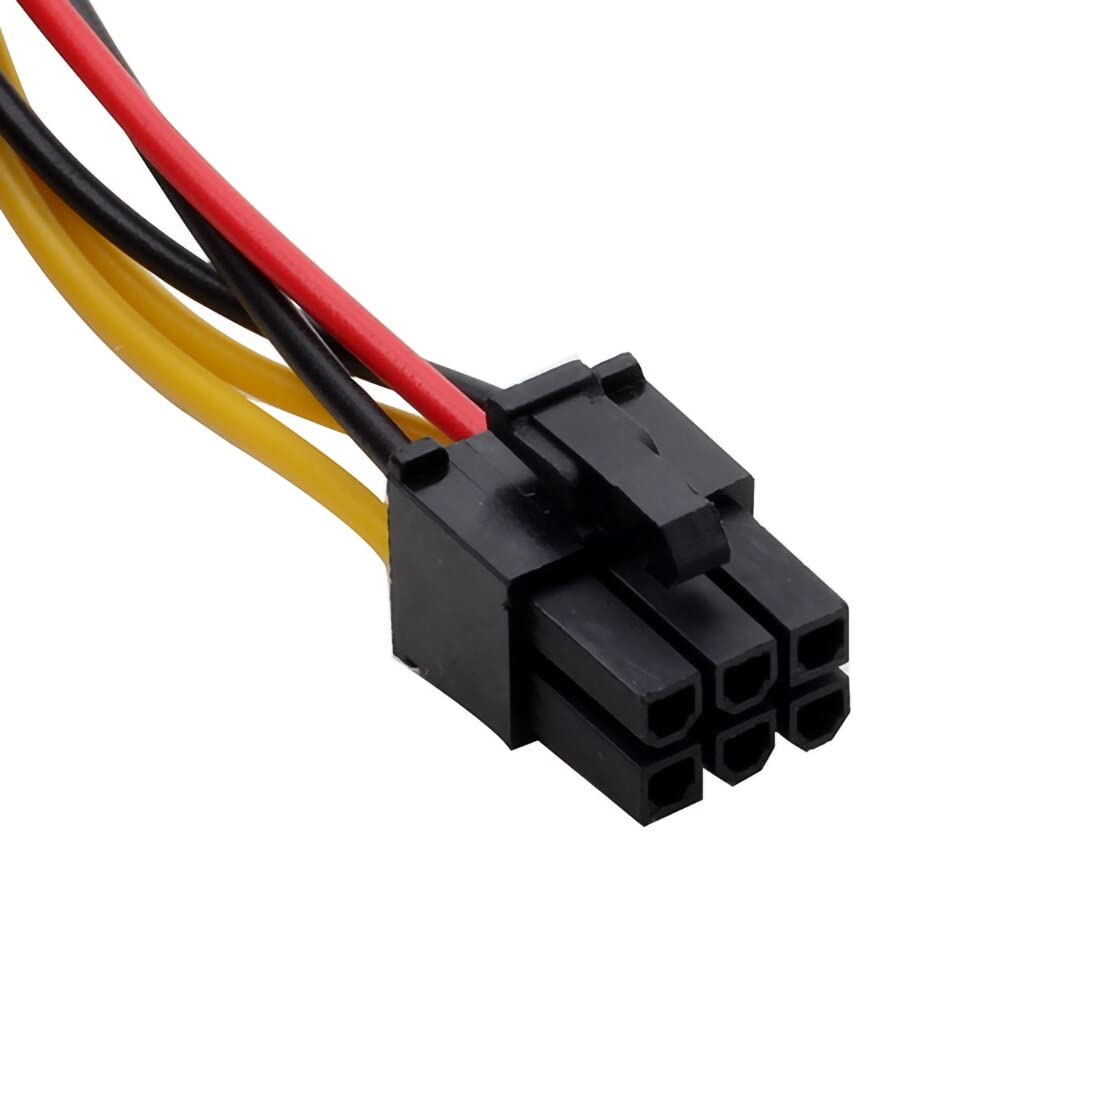 Cable de alimentacion para tarjeta grafica PCI-E 6 pin 0.15 M Multicol